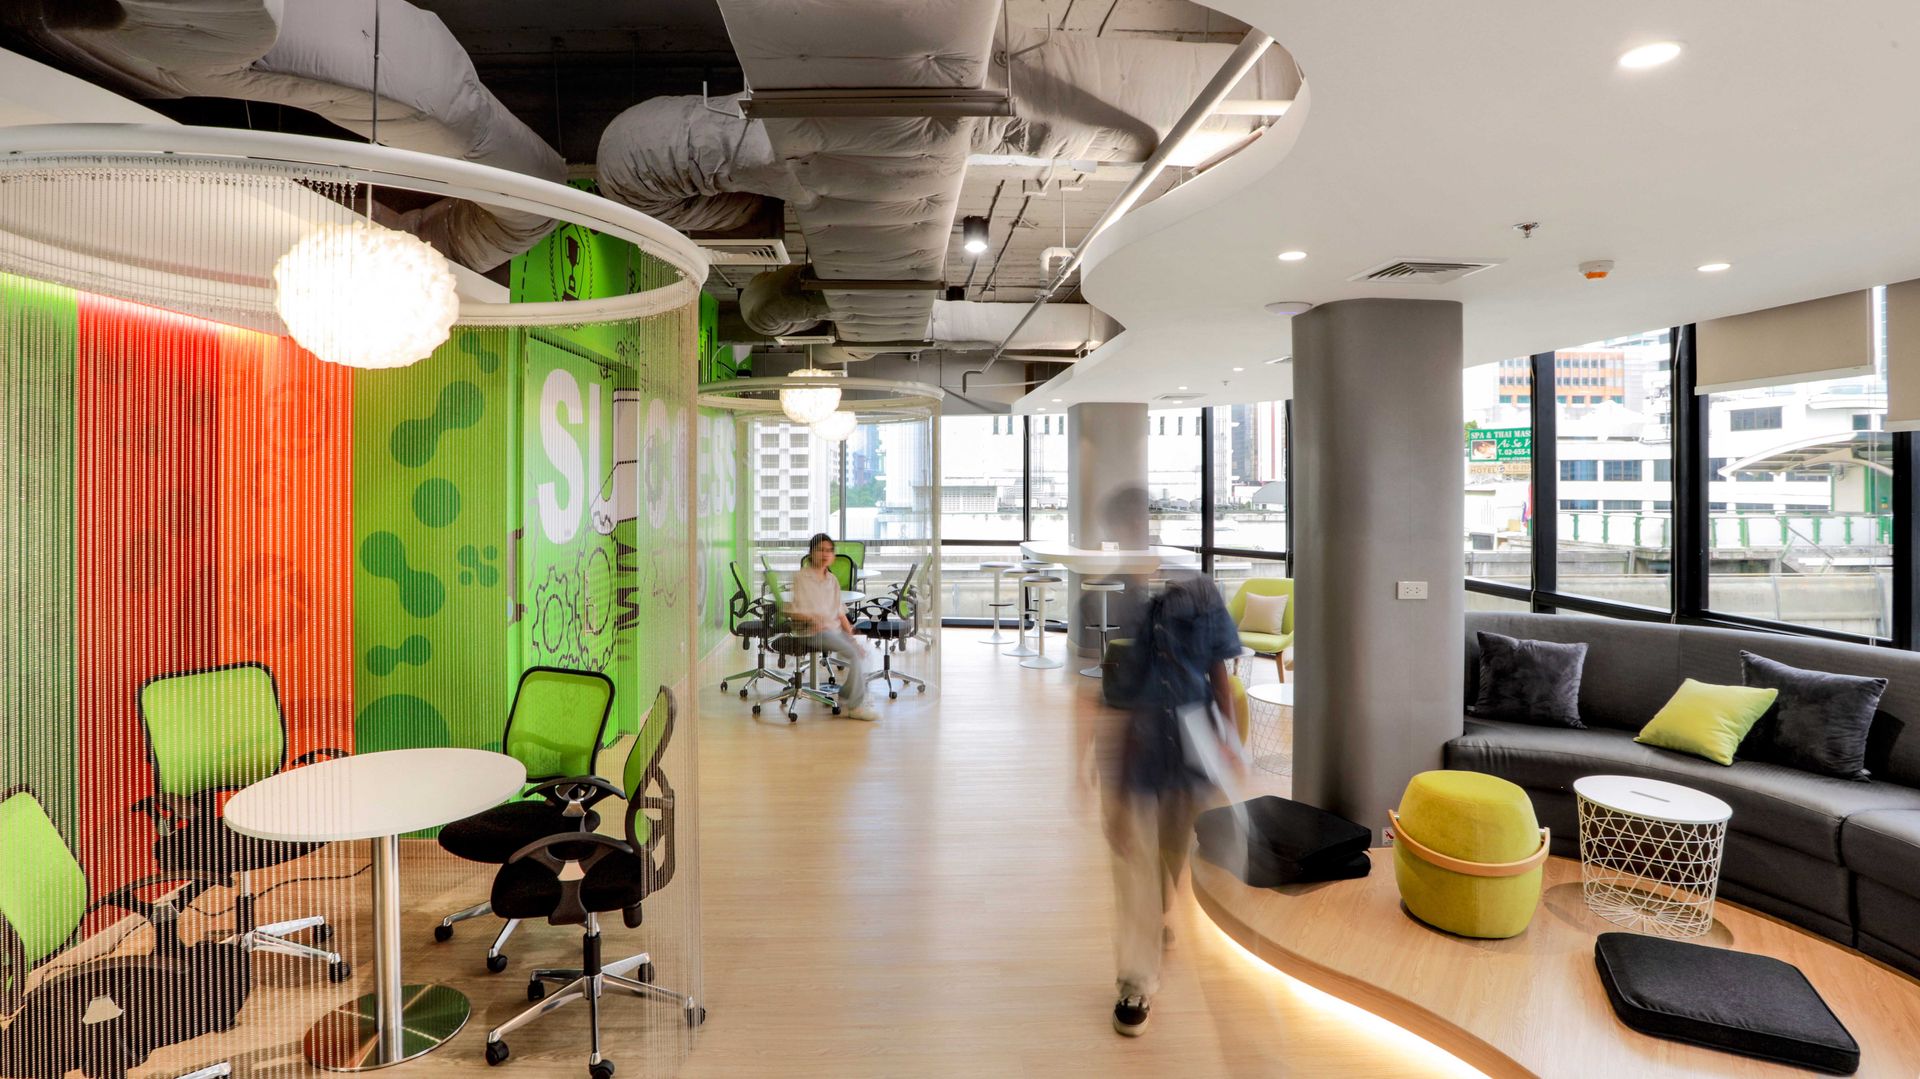 ์Nutrition Gel ( The Real) Modernize Design + Turnkey พื้นที่เชิงพาณิชย์ ออกแบบตกแต่งภายใน , ตกแต่งสำนักงาน , interiordesignbangkok , ออกแบบออฟฟิศ , ตกแต่งโมเดิร์น , officedesign,อาคารสำนักงาน